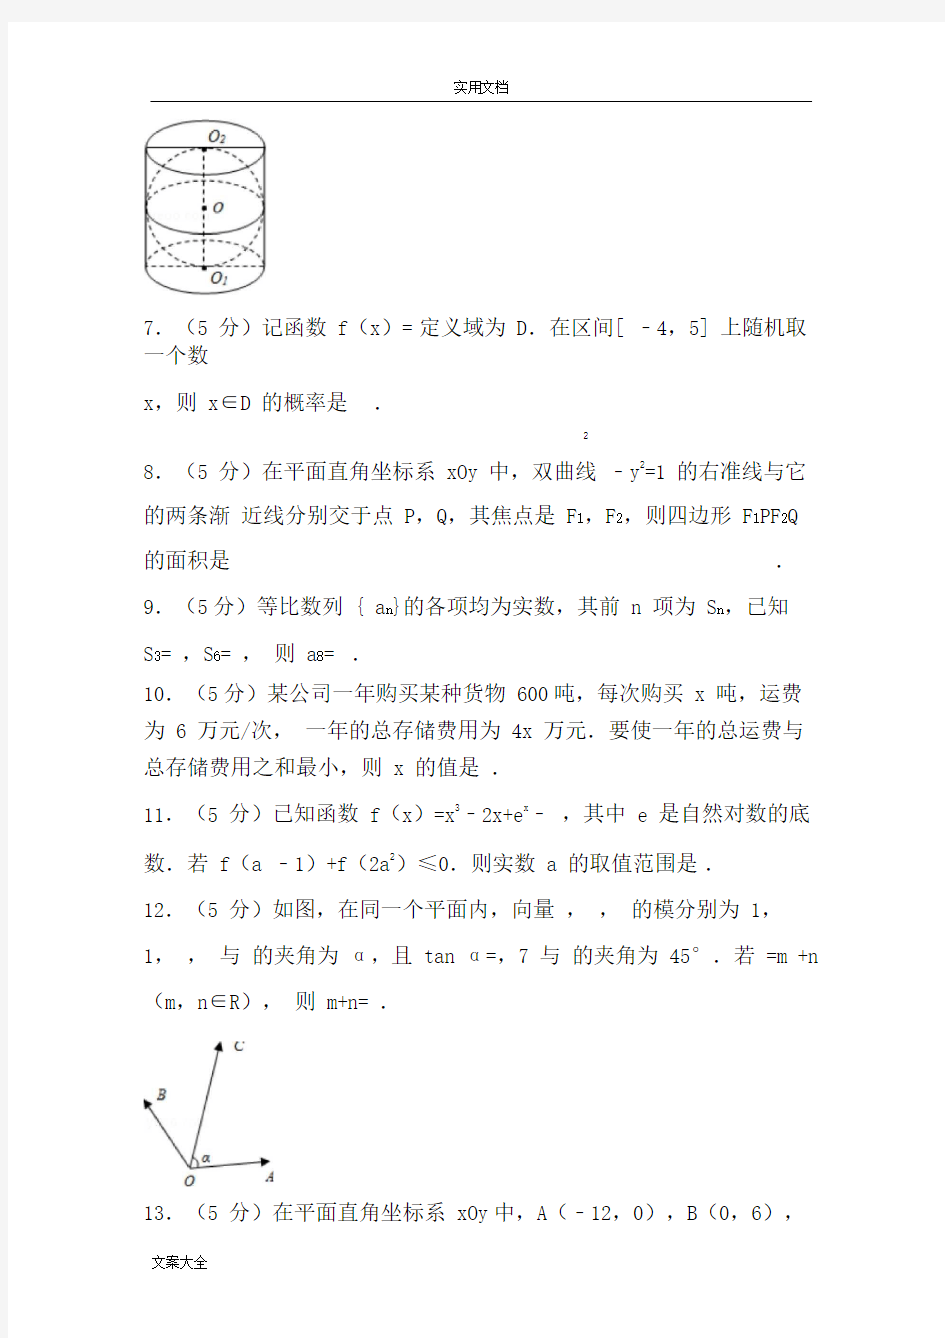 2017年江苏省高考数学试卷(20210128210647)